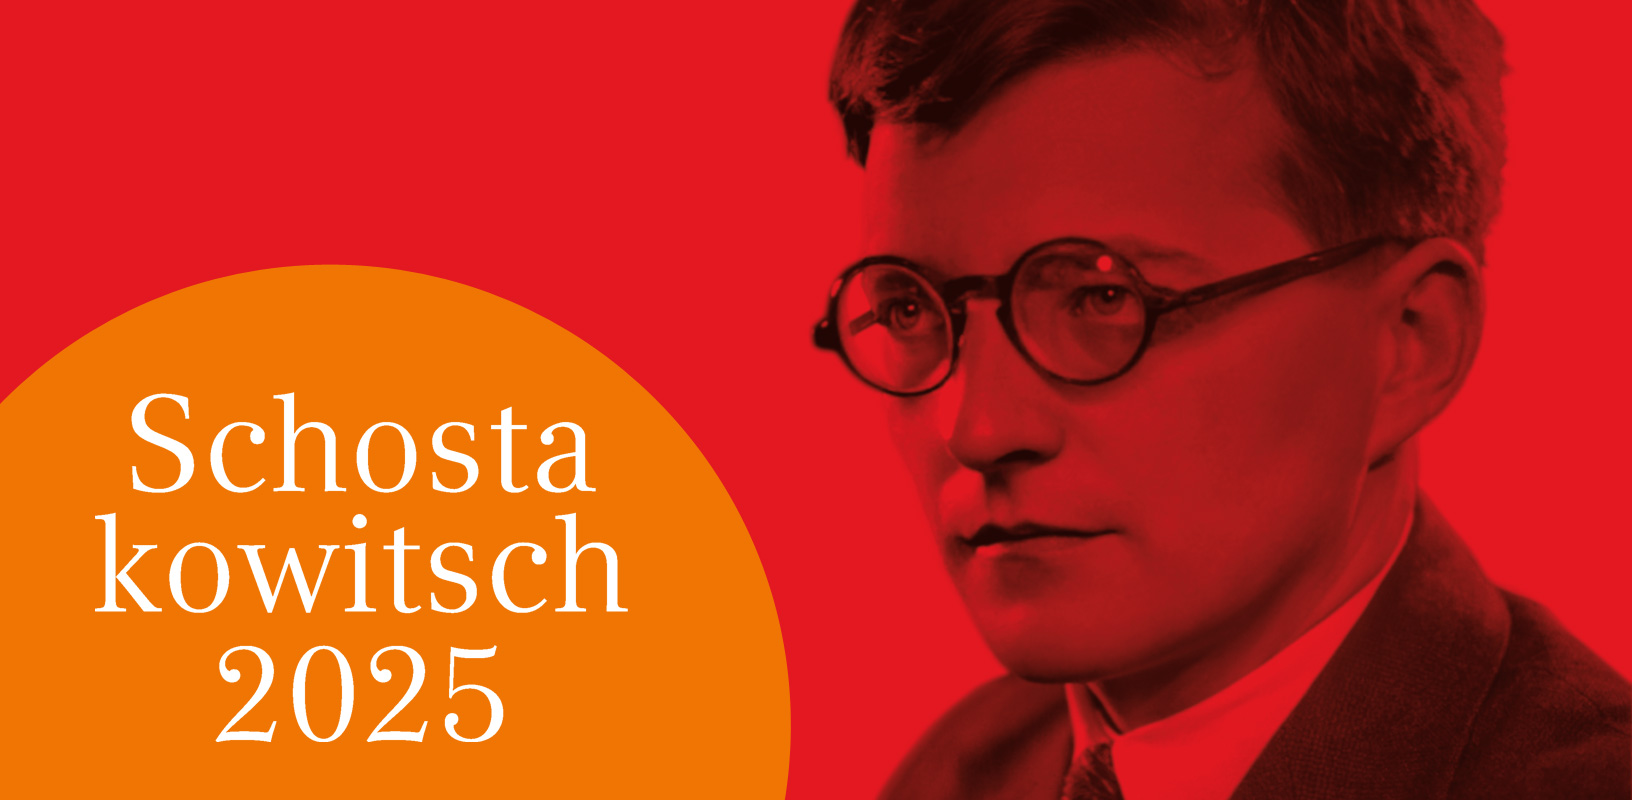 Entdeckungen und Programm-Ideen zum Schostakowitsch-Jahr